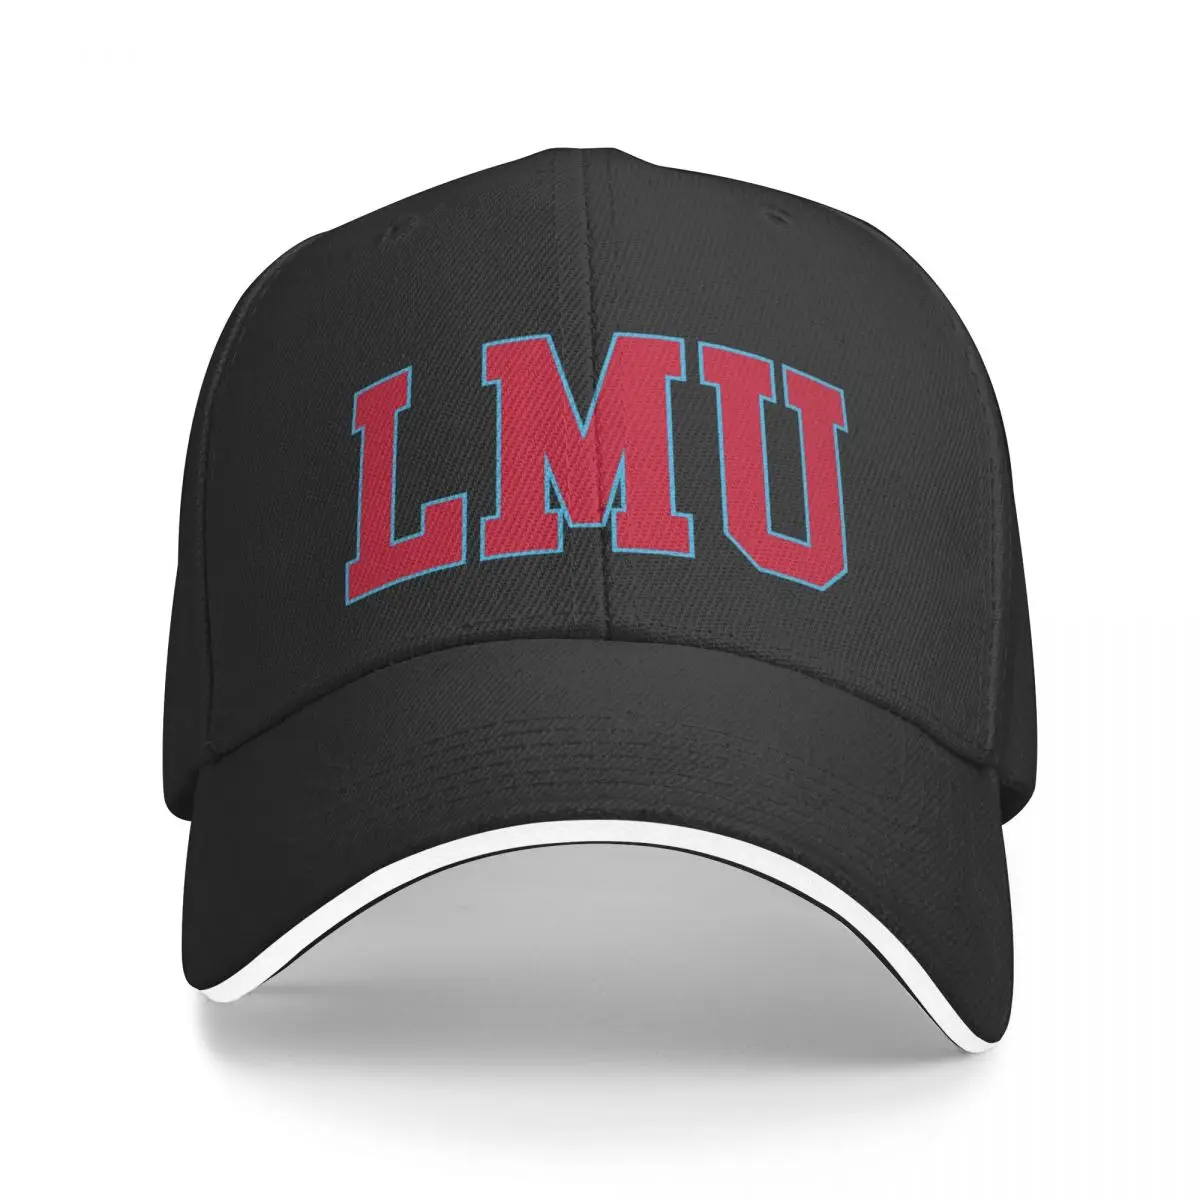 Нова бейзболна шапка lmu - college font, бейзболна шапка с див топката, бейзболна шапка с pom-помераните, шапка за голф, Мъжки и дамски облекла за голф